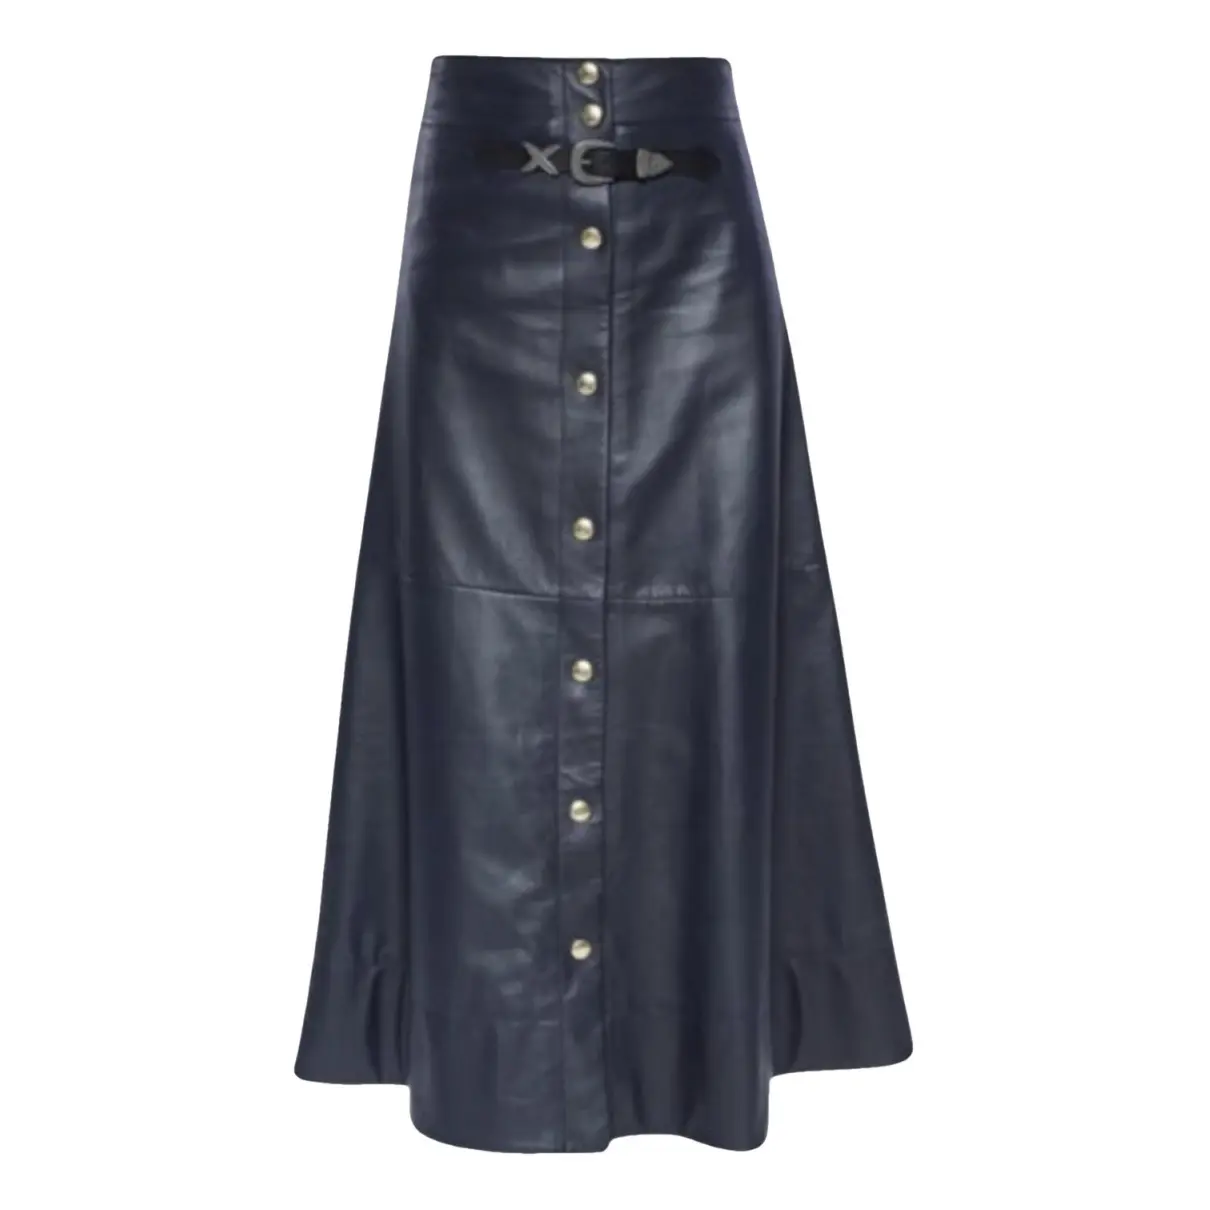 Leather skirt Sonia Rykiel - Vintage